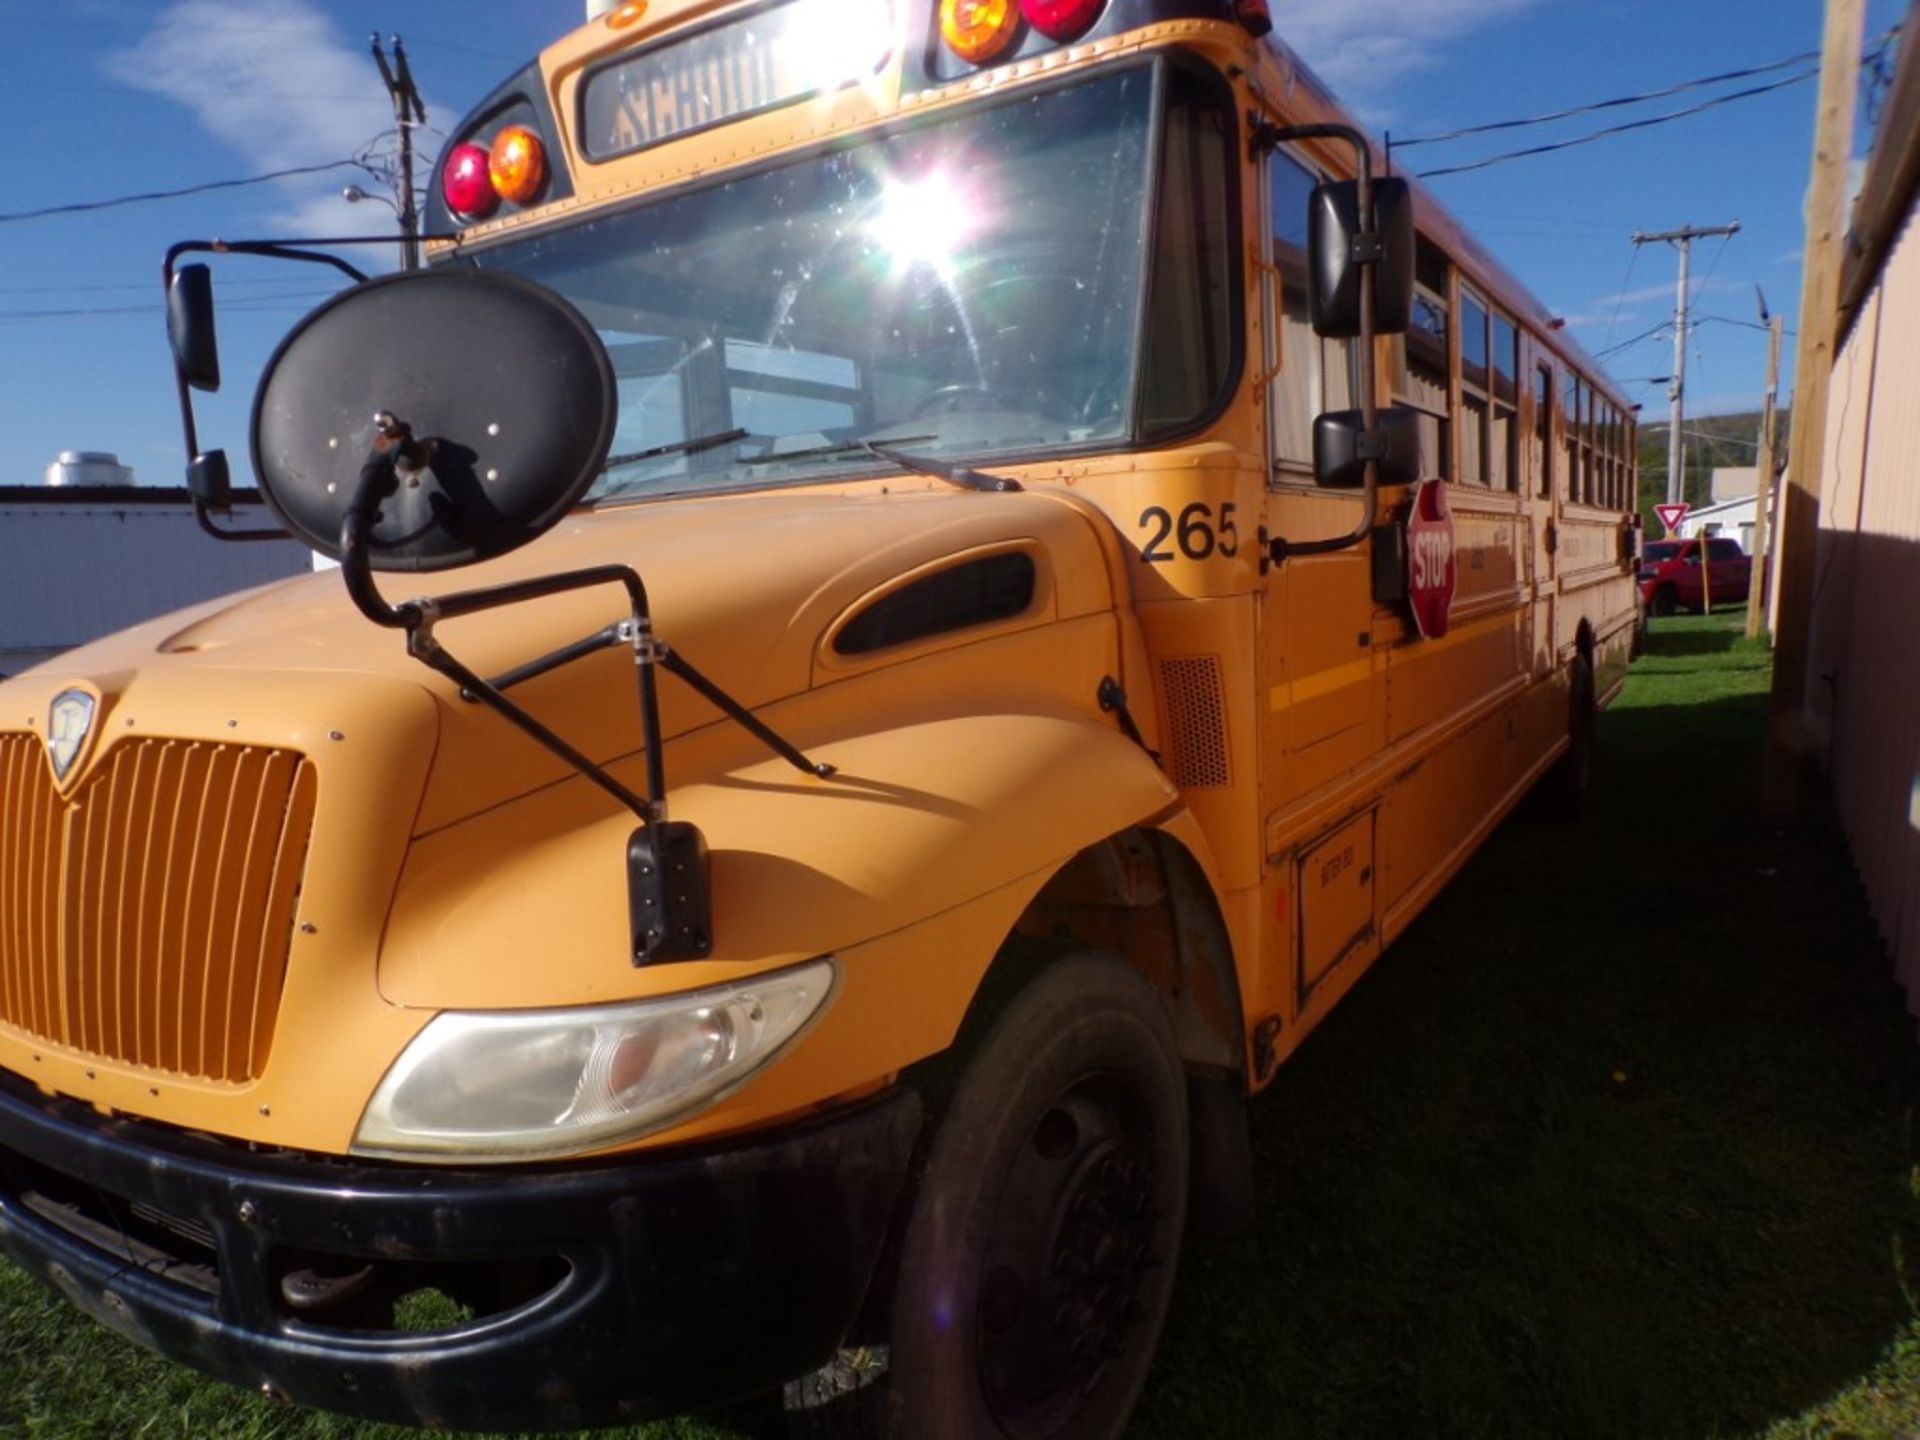 2014 International 66 Seat School Bus, Maxx Force Diesel, 165,315 Miles, # 265, Vin # - Image 3 of 7